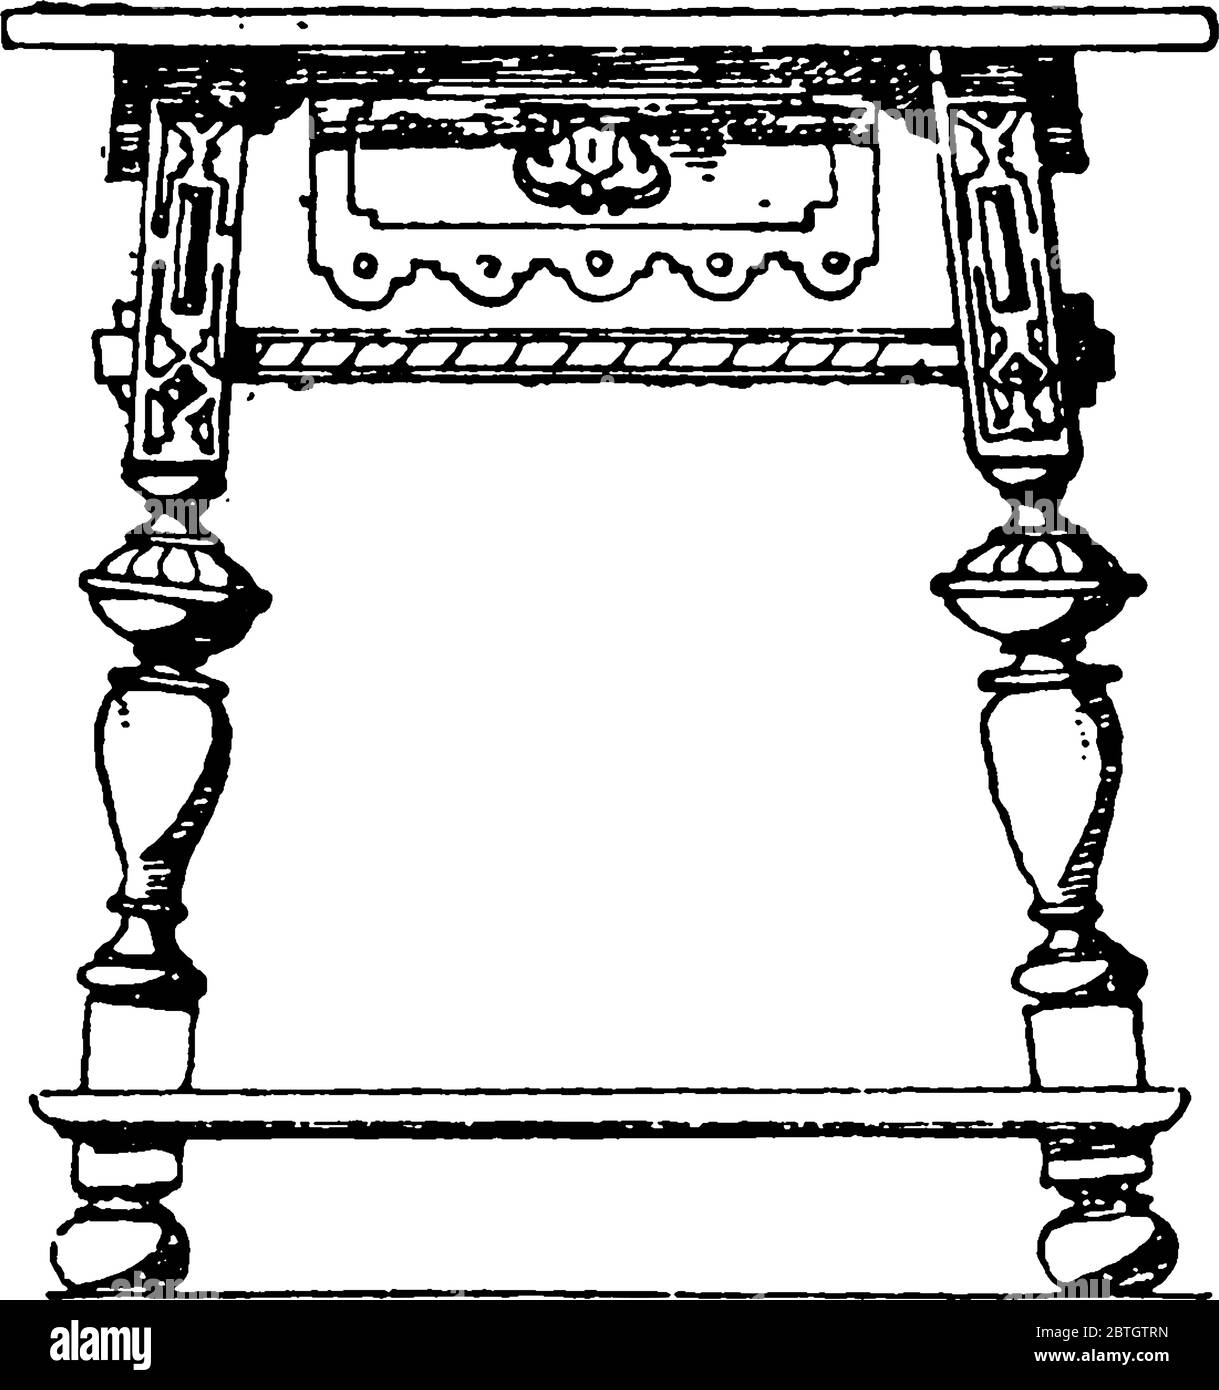 Der moderne Renaissance-Stil Tisch mit Beinen, die prismatisch, gedreht oder manchmal gebogen sind. Sie stehen entweder aufrecht oder schrägen nach außen, Vintage Linie Stock Vektor